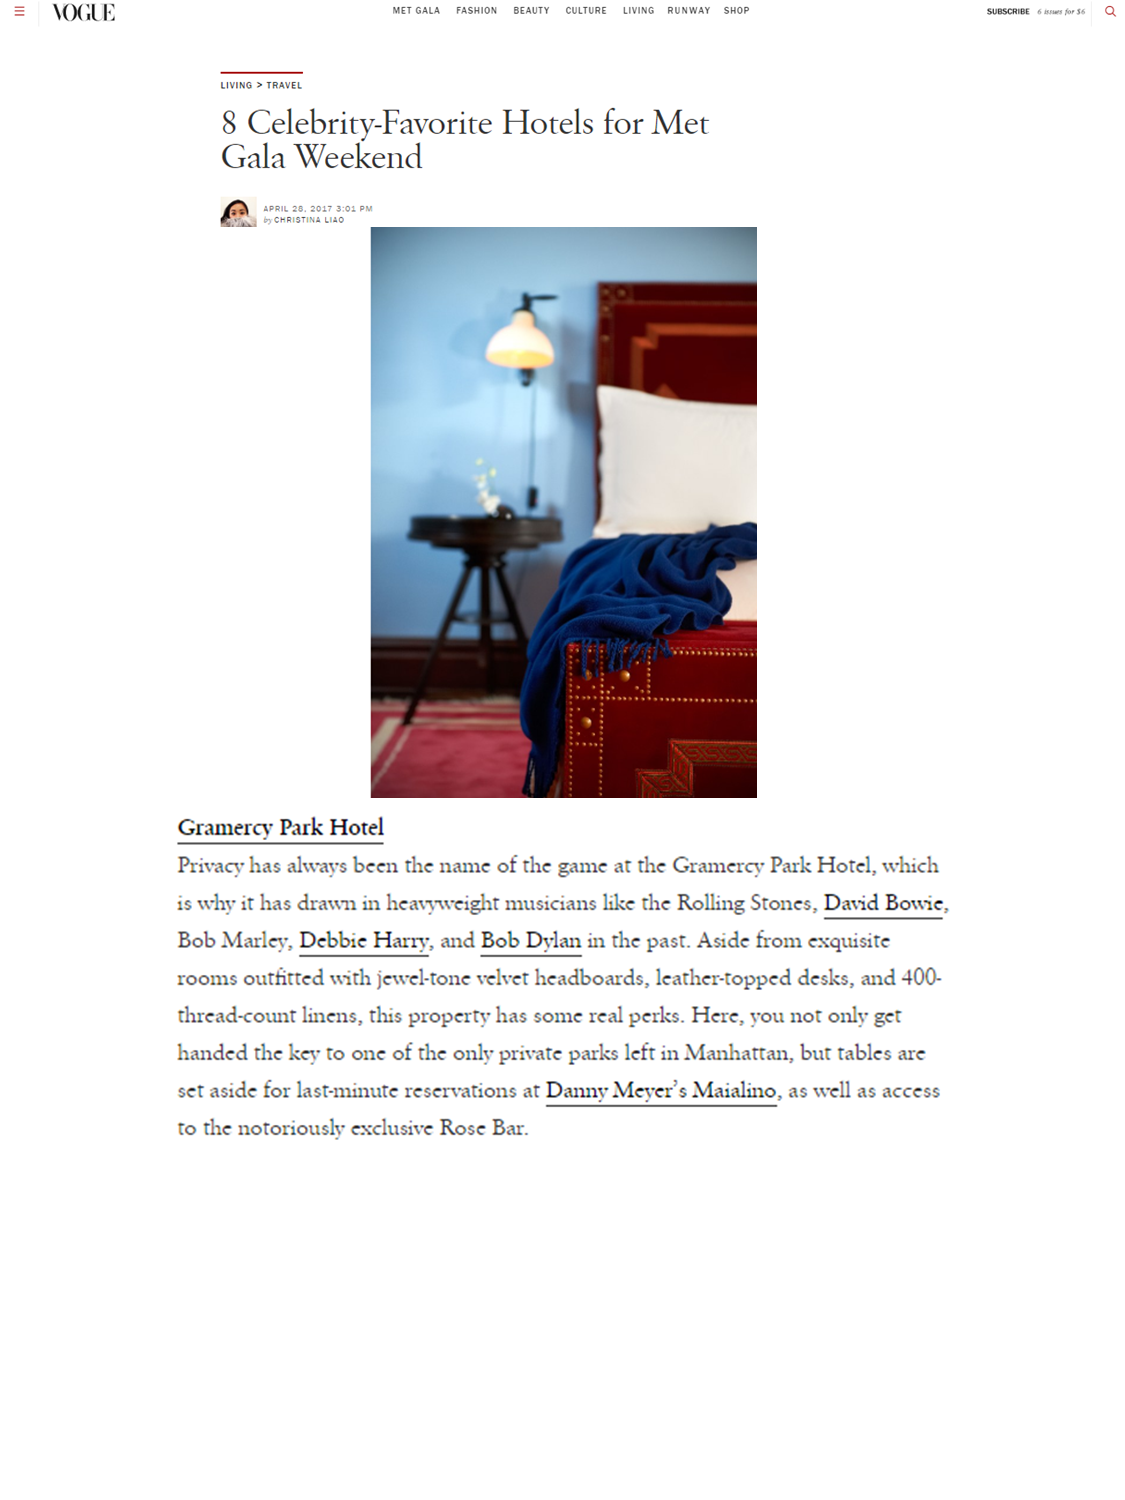 Gramercy Park Hotel Featured in Vogue